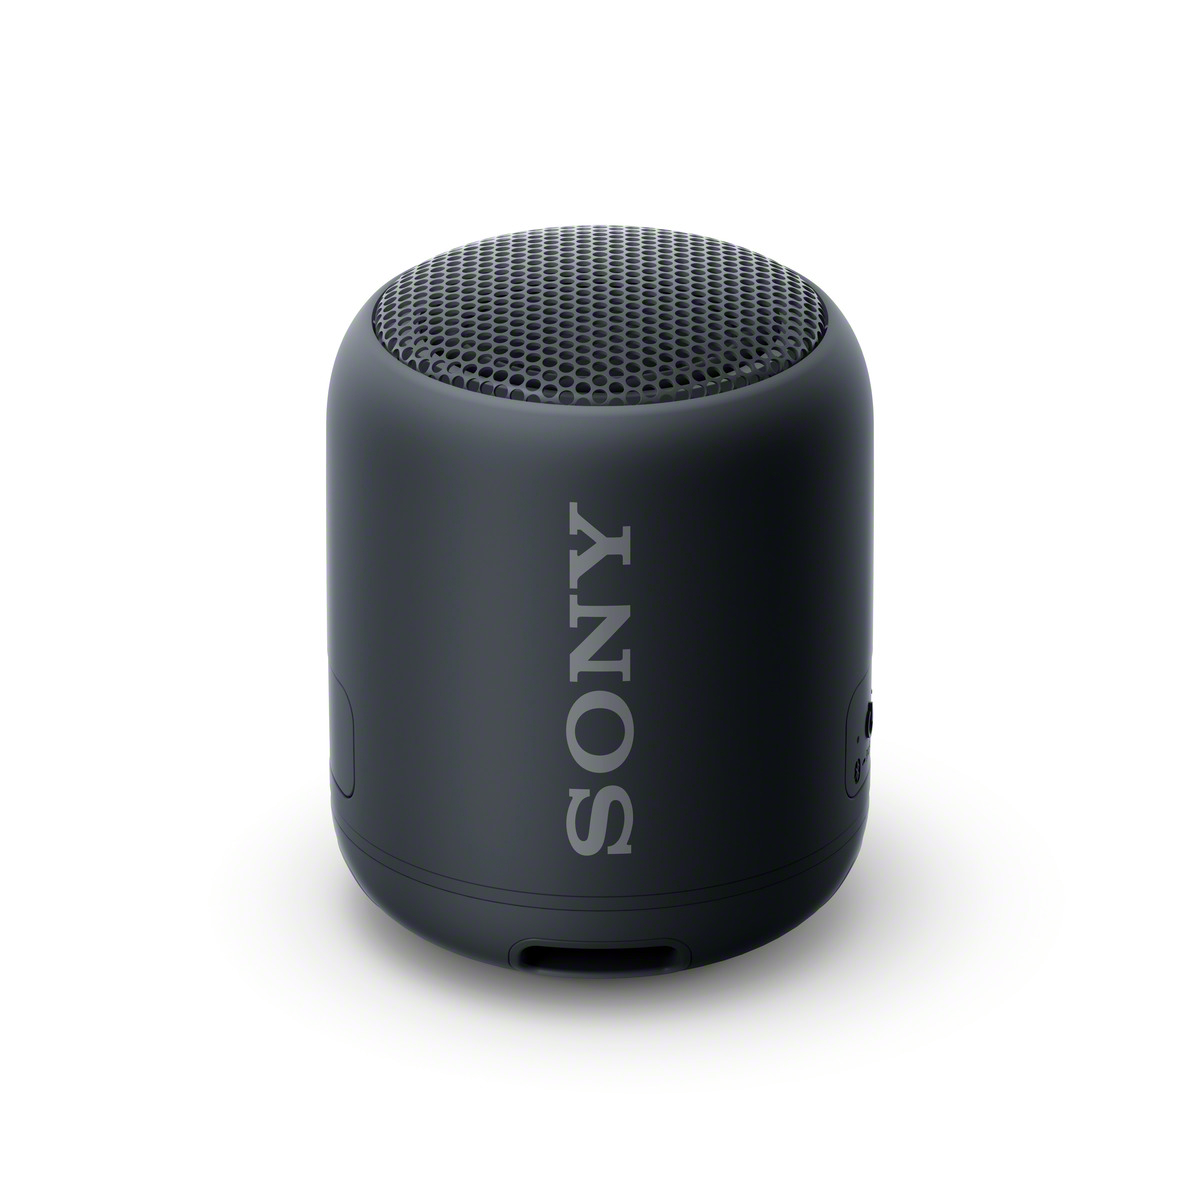 Schwarz SONY + SRS-XB12 und Lautsprecher Plattenspieler Bluetooth PS-LX310BT